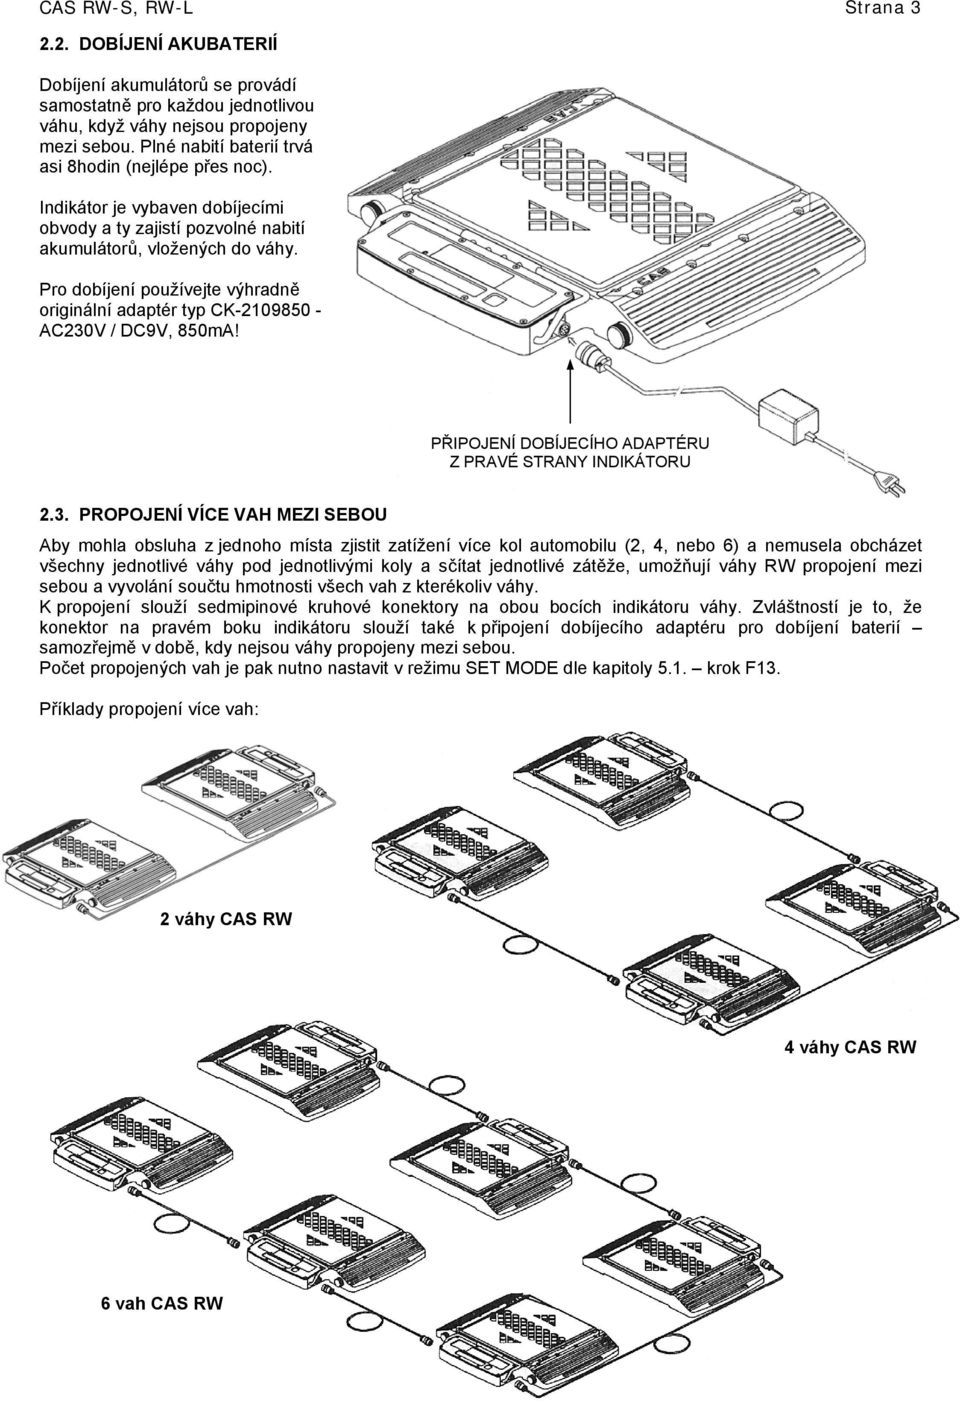 Pro dobíjení používejte výhradně originální adaptér typ CK-2109850 - AC230